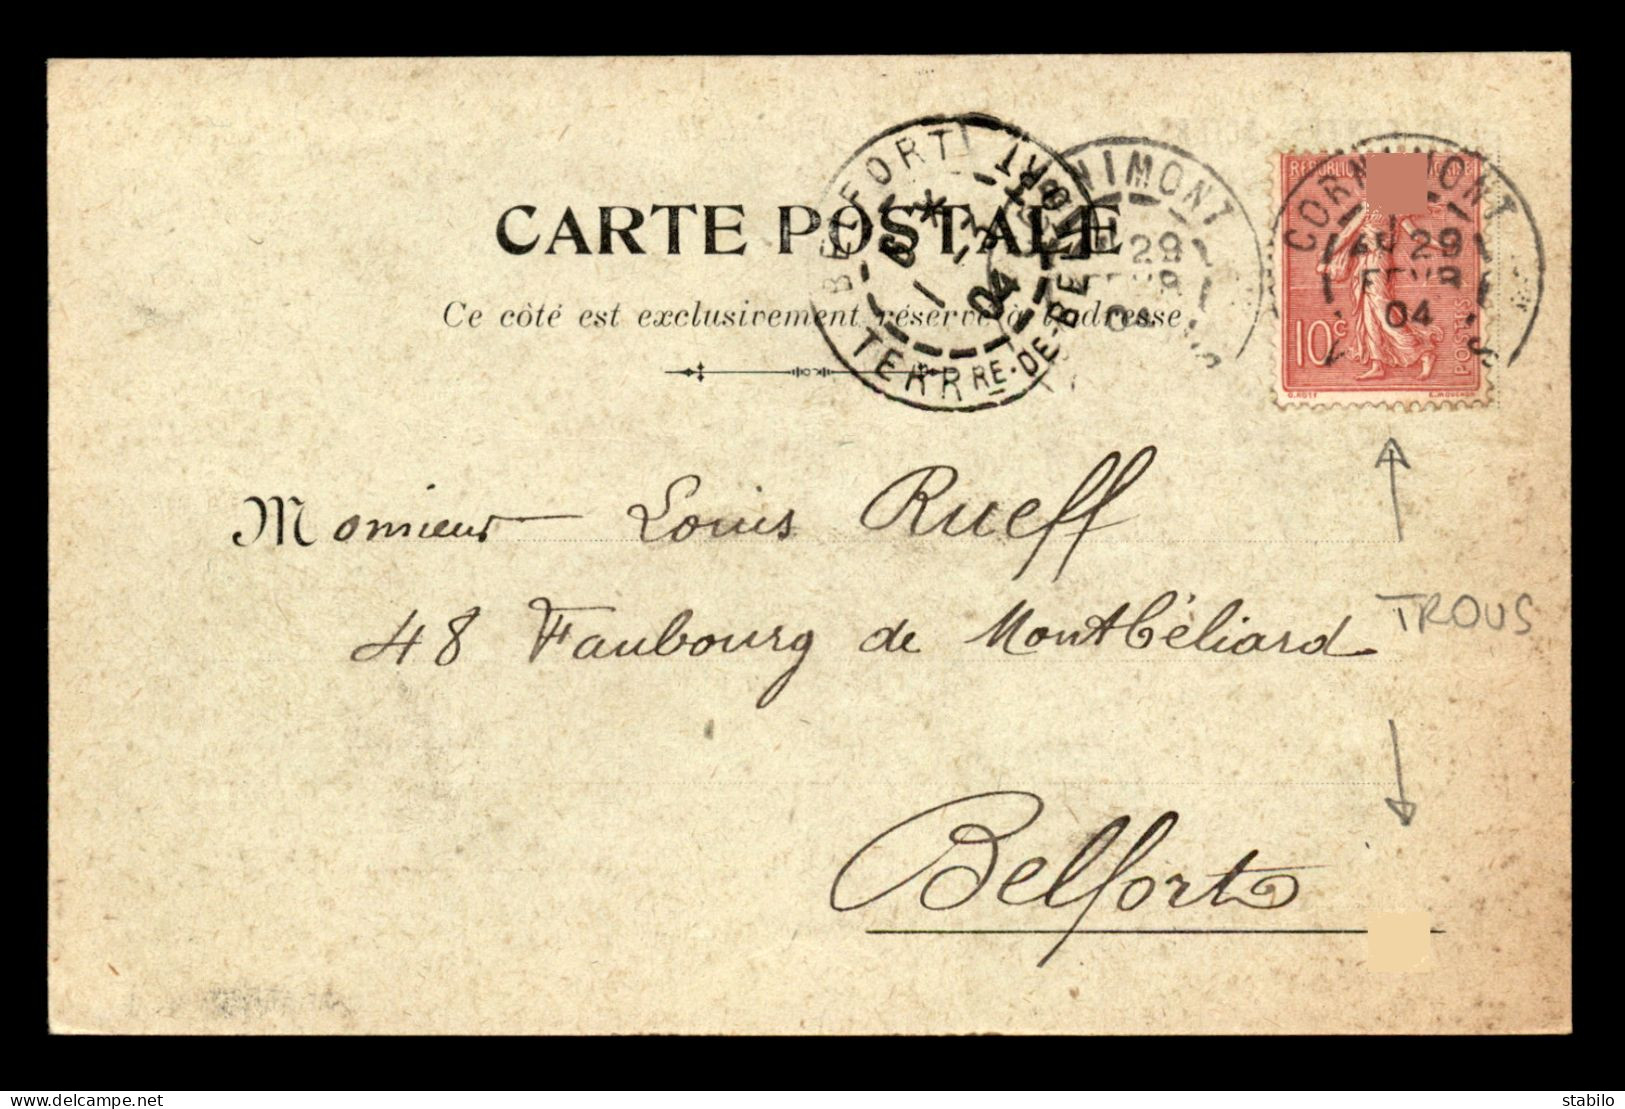 88 - CORNIMONT - CARTE DE SERVICE - EMILE COLIN, QUINCAILLERIE - FEVRIER 1904 - Cornimont